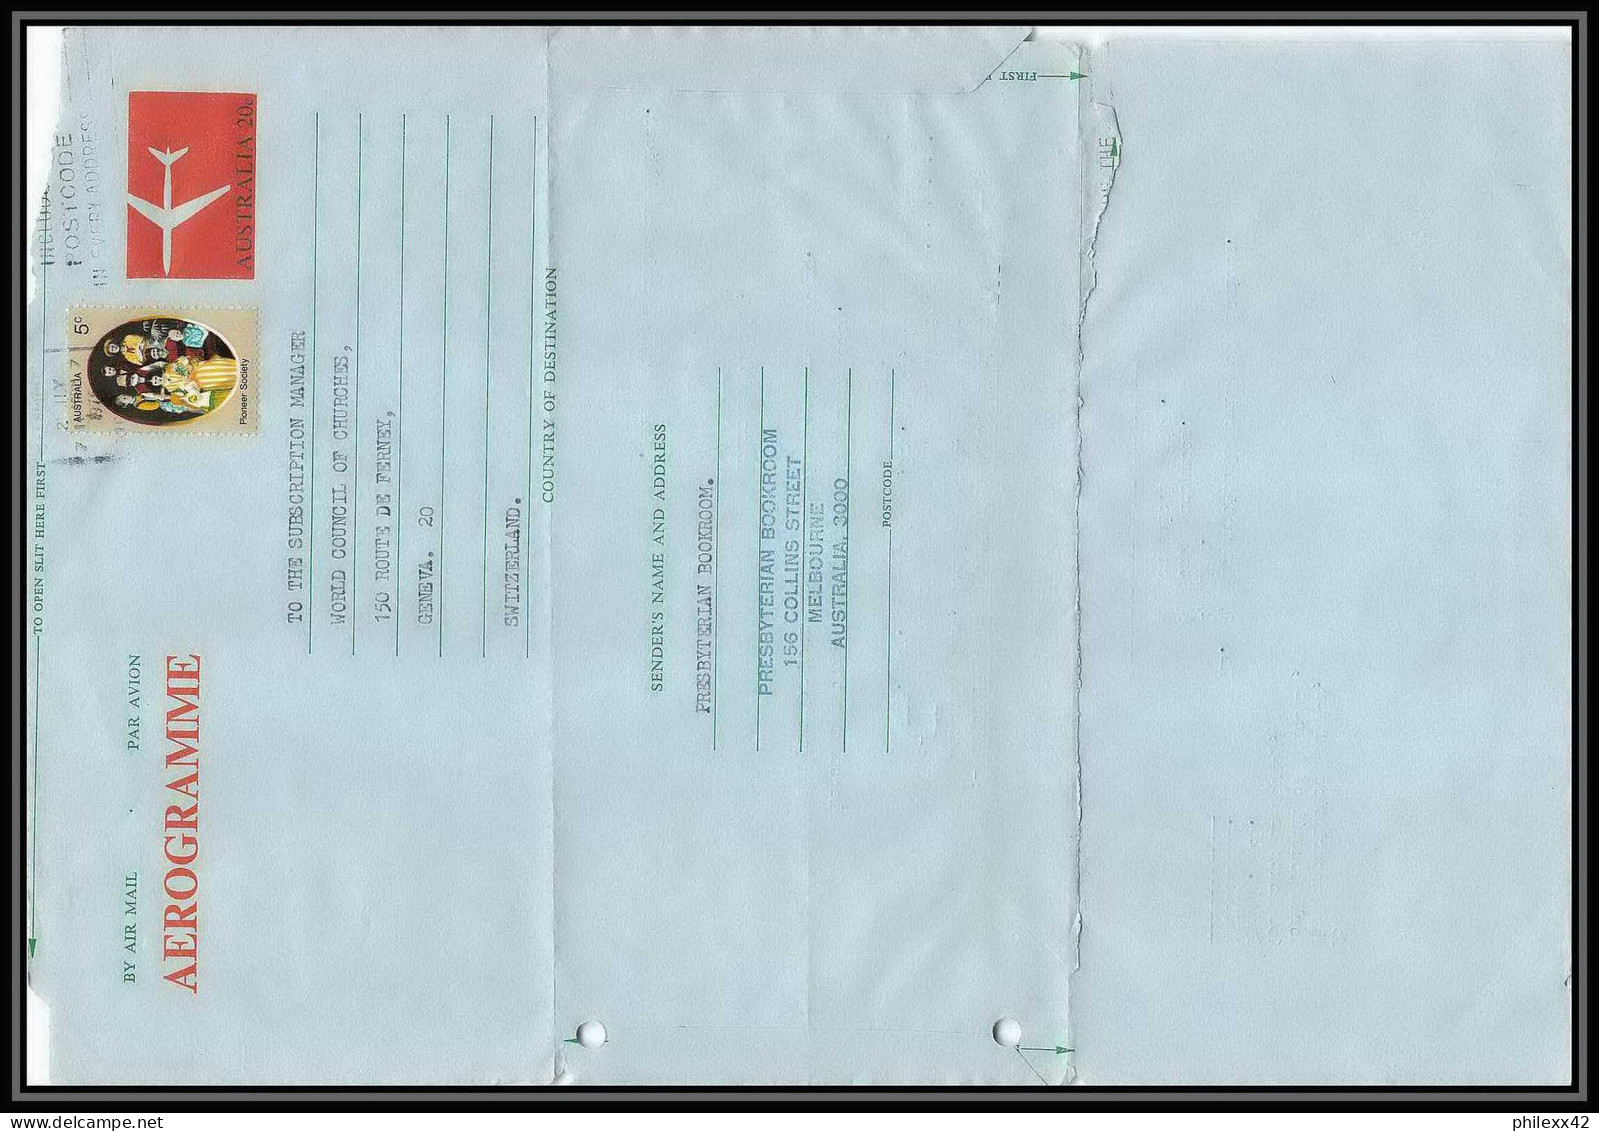 3700/ Australie (australia) Entier Stationery Aérogramme Air Letter 1976 Pour Genève Suisse - Aérogrammes